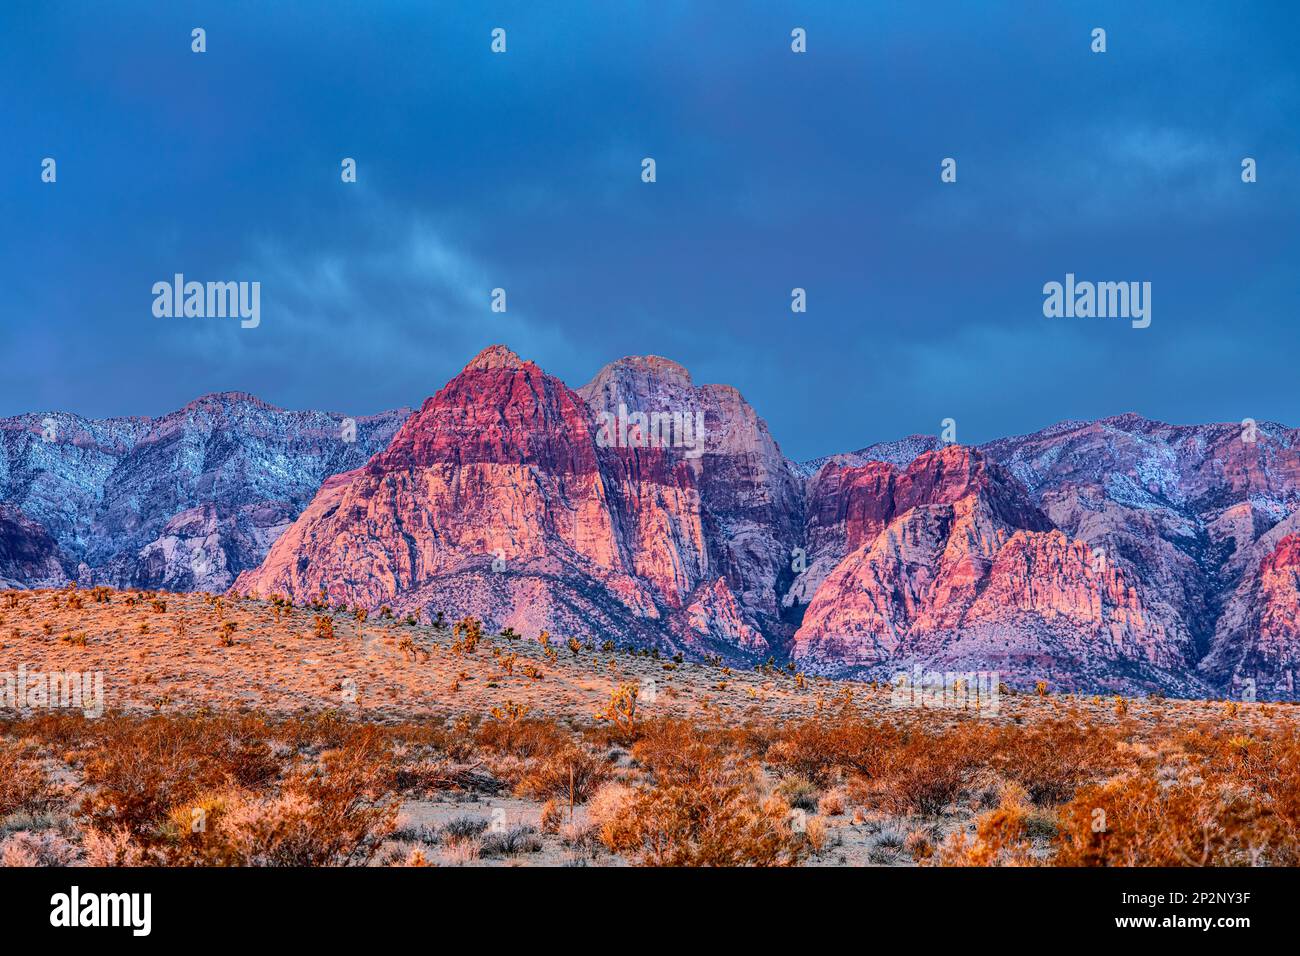 La roche striée de Red Rock Canyon montre la couleur pour laquelle la région est noms. Attraction pour les randonneurs, les grimpeurs à roock et les restaurateurs. Banque D'Images